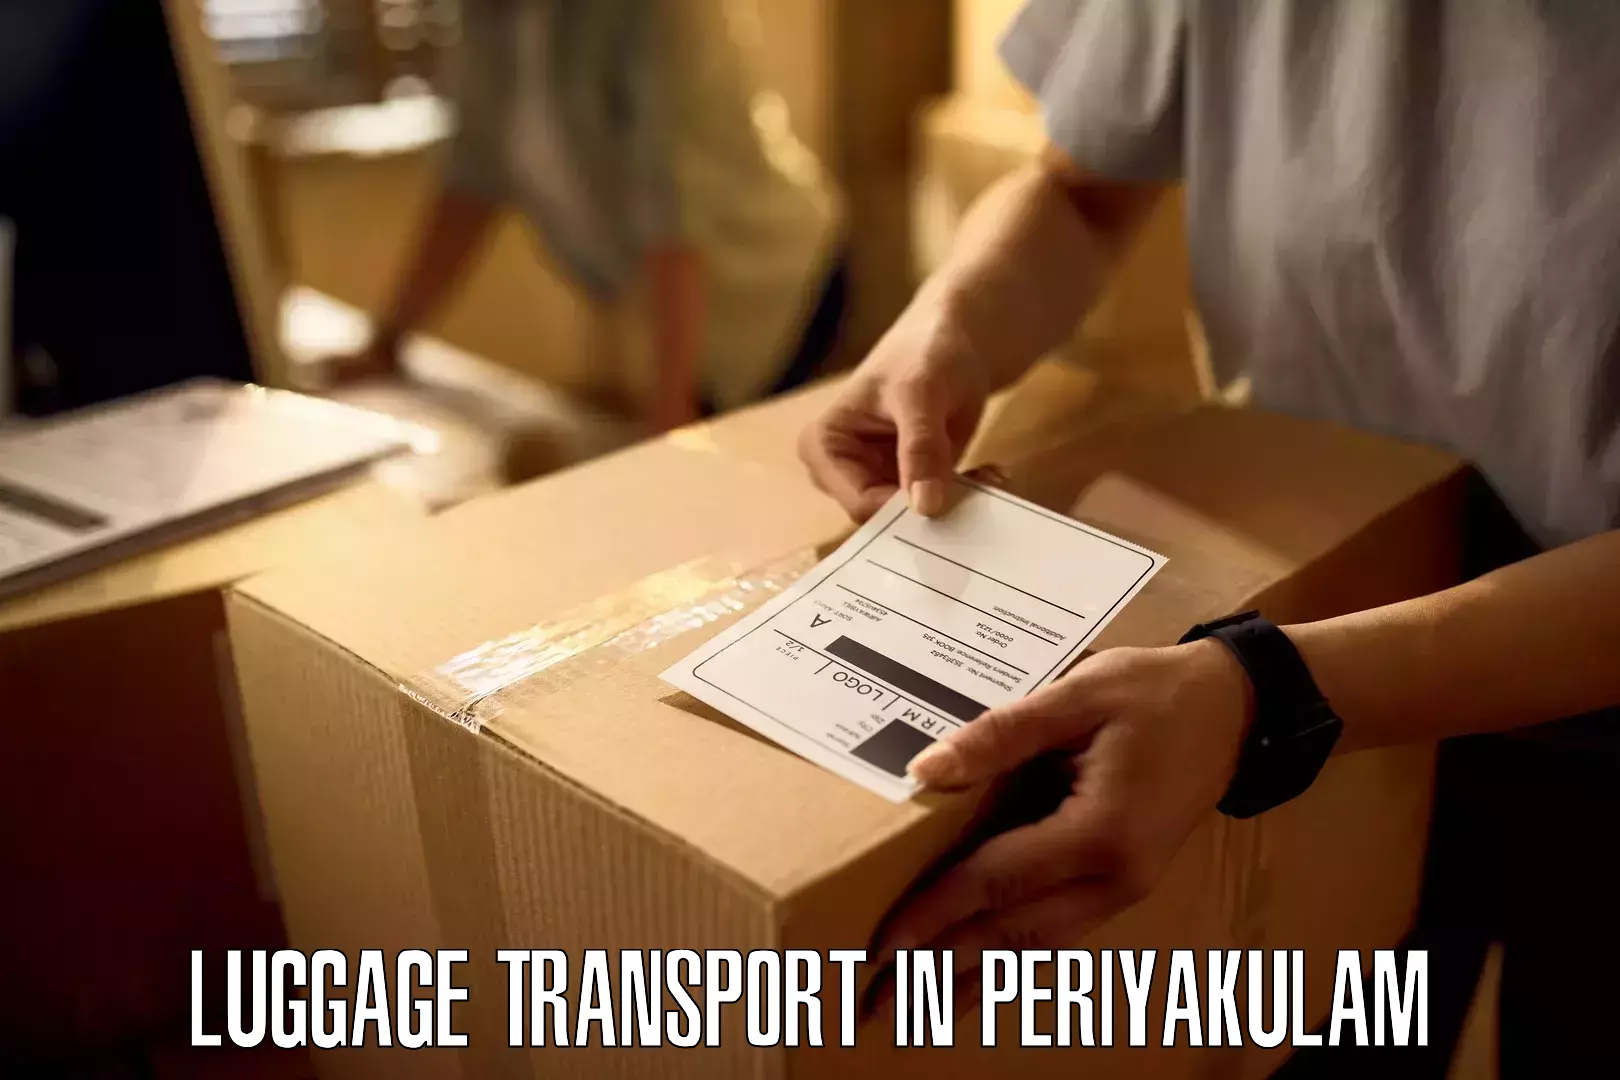 Luggage delivery app in Periyakulam